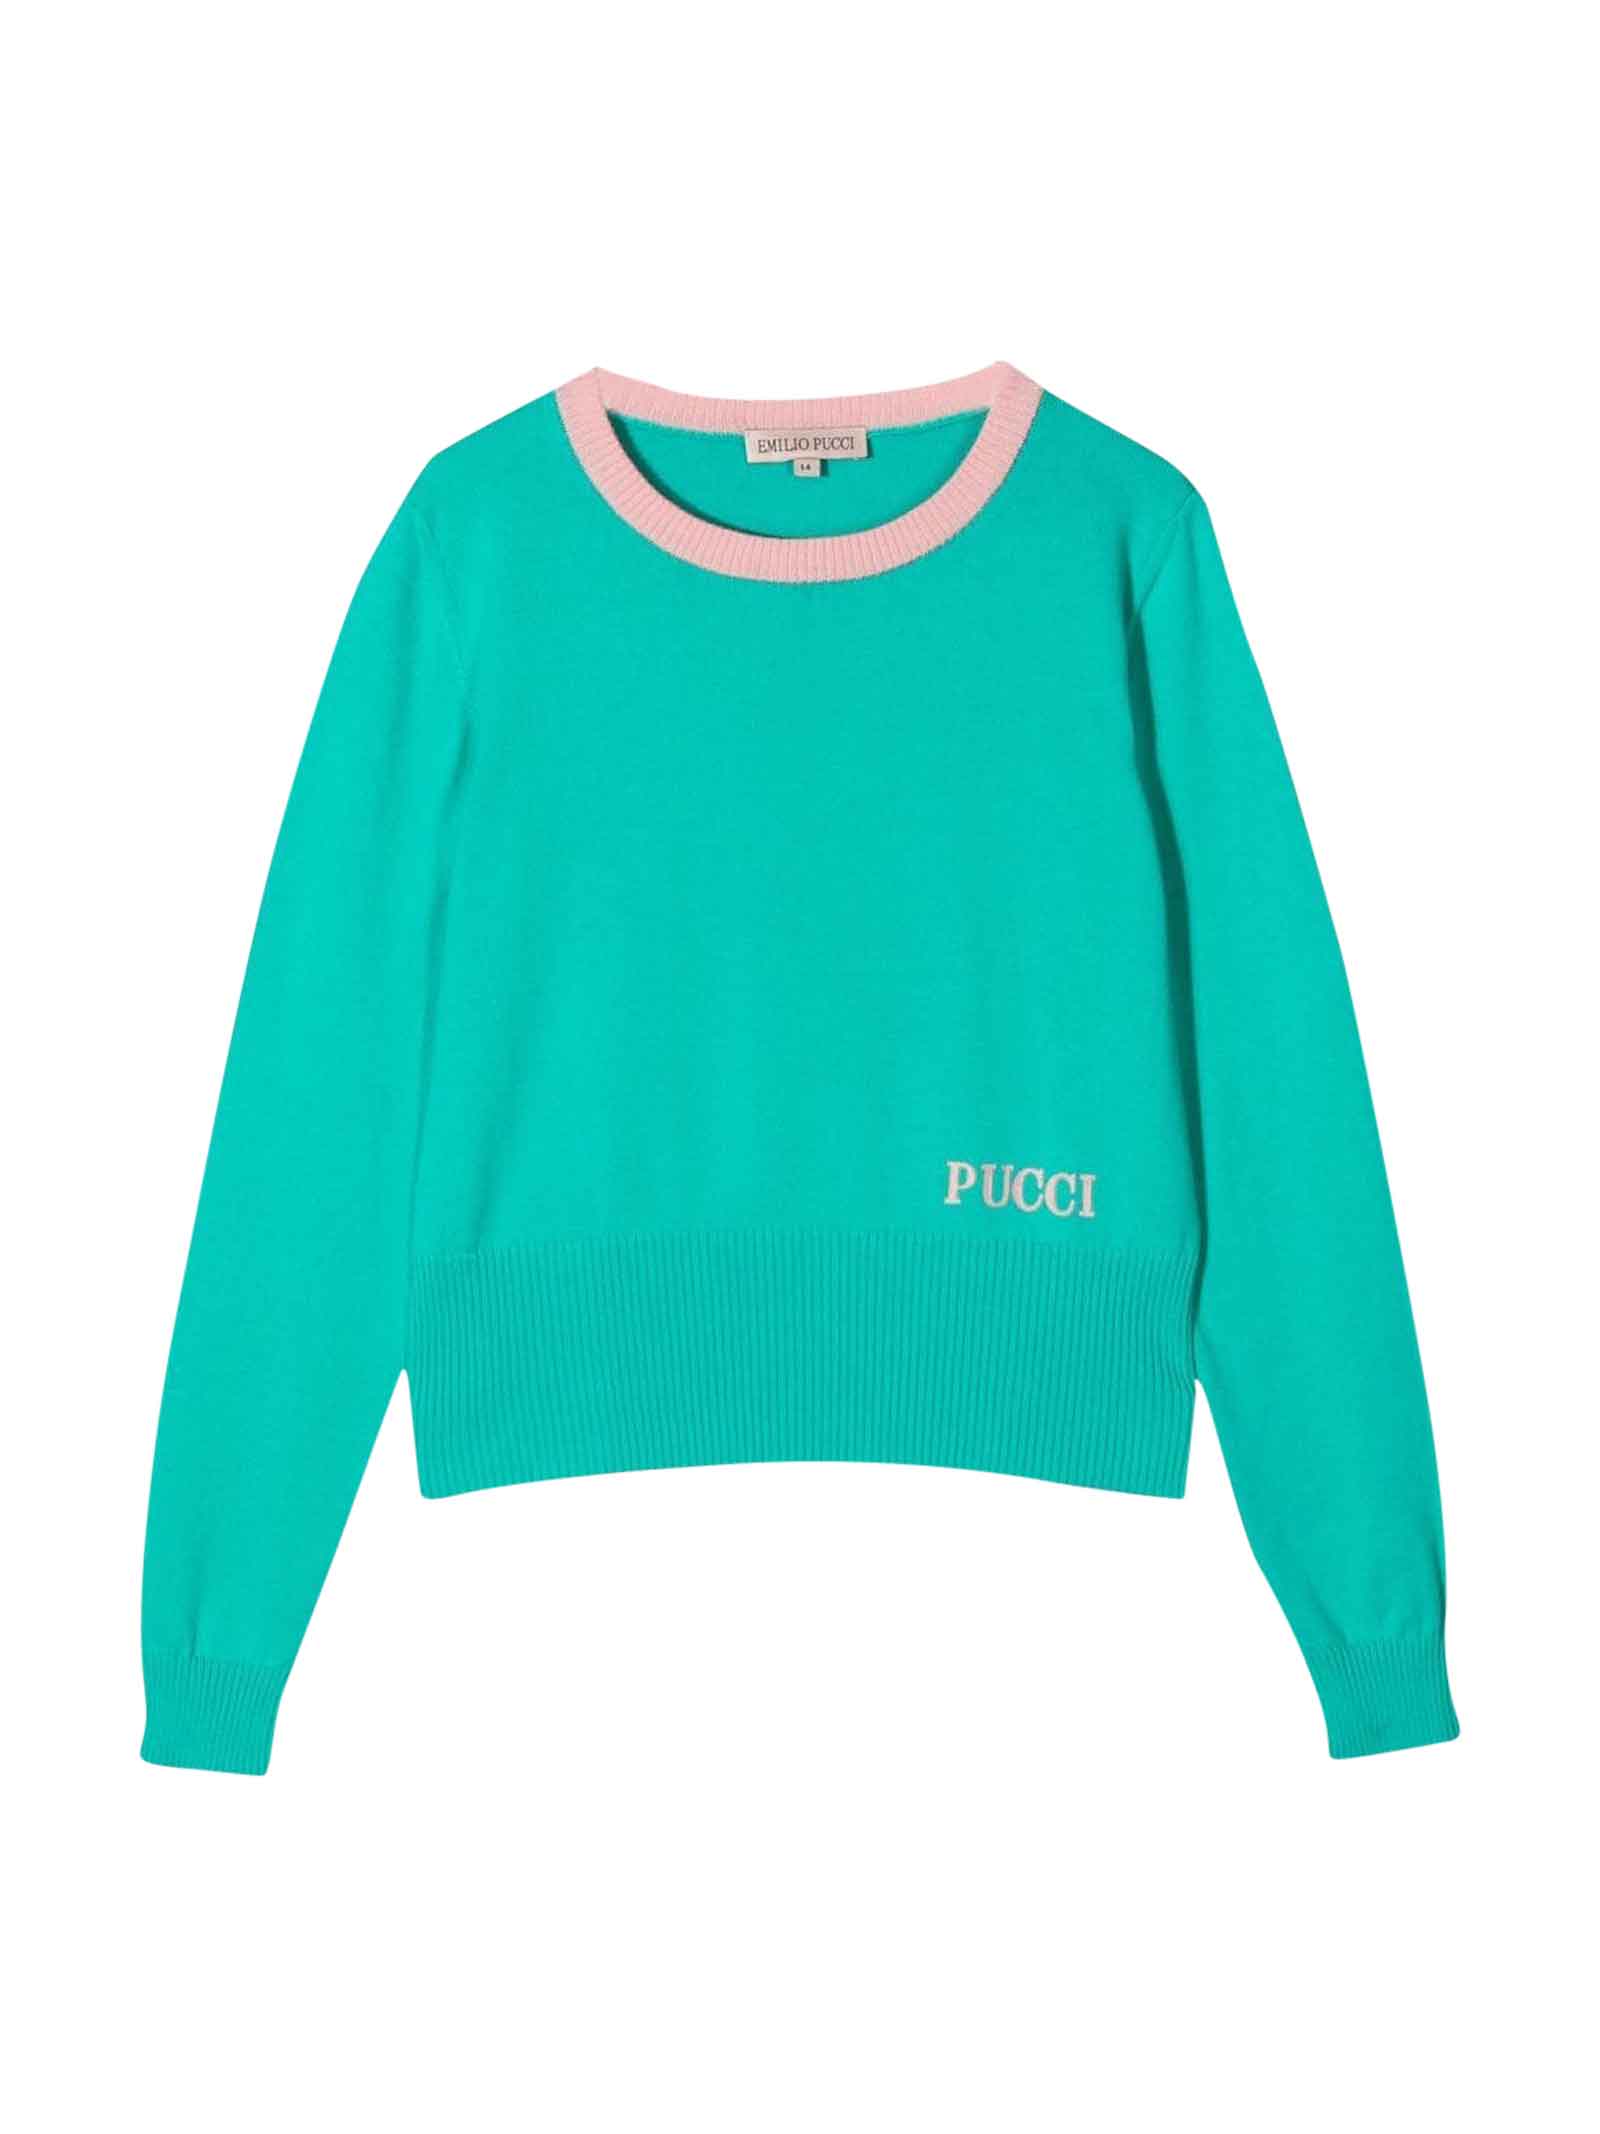 Emilio Pucci Girl Green Sweater